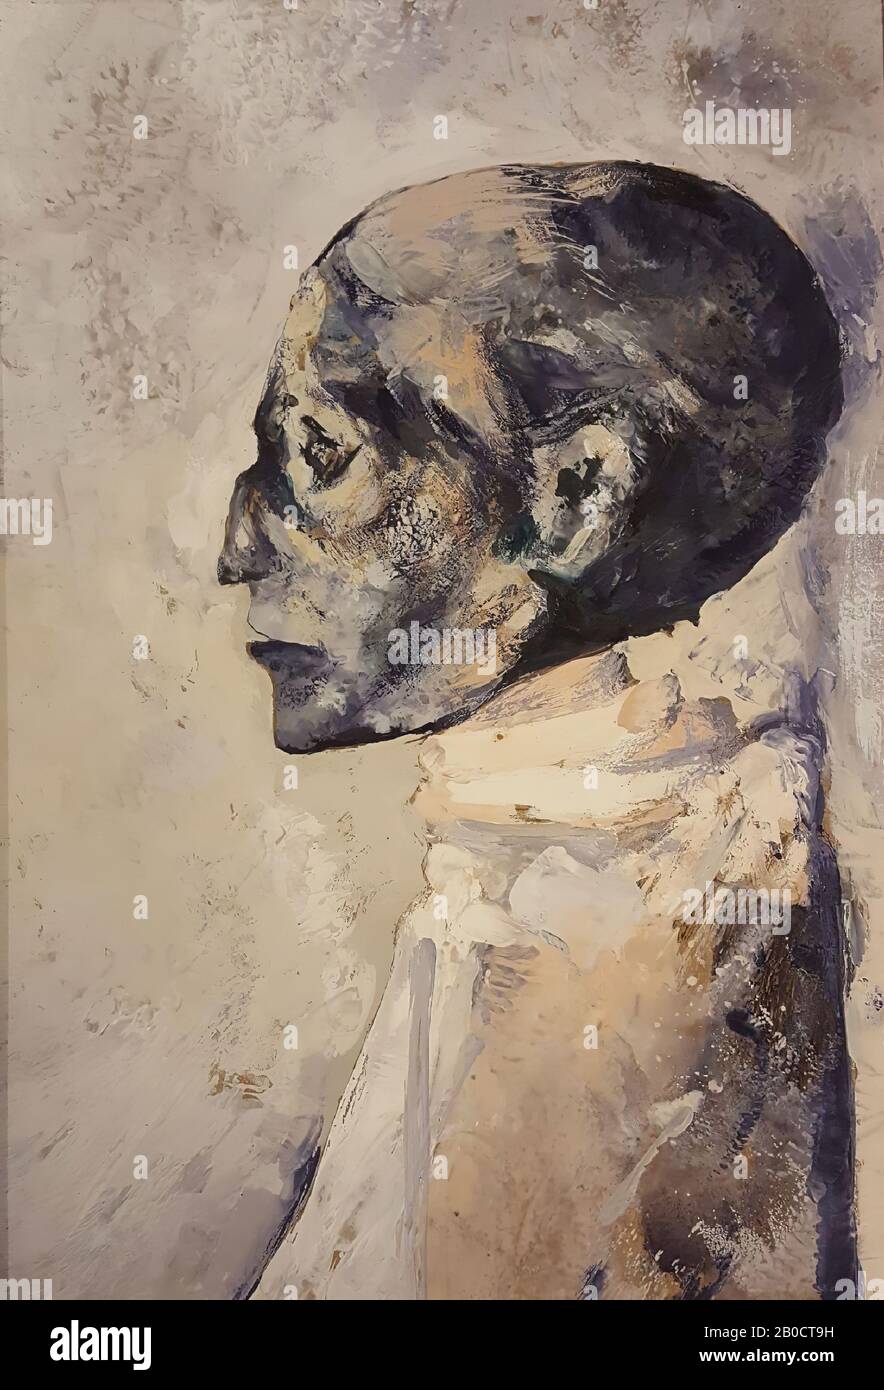 Ramses III, Pittura dell'artista Riky Schellart-van Deursen (1942-2013), formato ritratto, raffigurante la mummia reale di Ramses III nel Museo Egizio del Cairo (CG 61083). Nella foto è raffigurato il corpo superiore e il profilo da destra, giacente sotto un riparo prevalentemente bianco con la testa scoperta, quest'ultima dipinta in tonalità scure, contro uno sfondo scuro., Dipinta in encaustico su pannello di pannelli duri, incorniciata in cornice di legno bianco. Segnato sul retro a matita: Riky Schellart-vDeursen Foto Stock